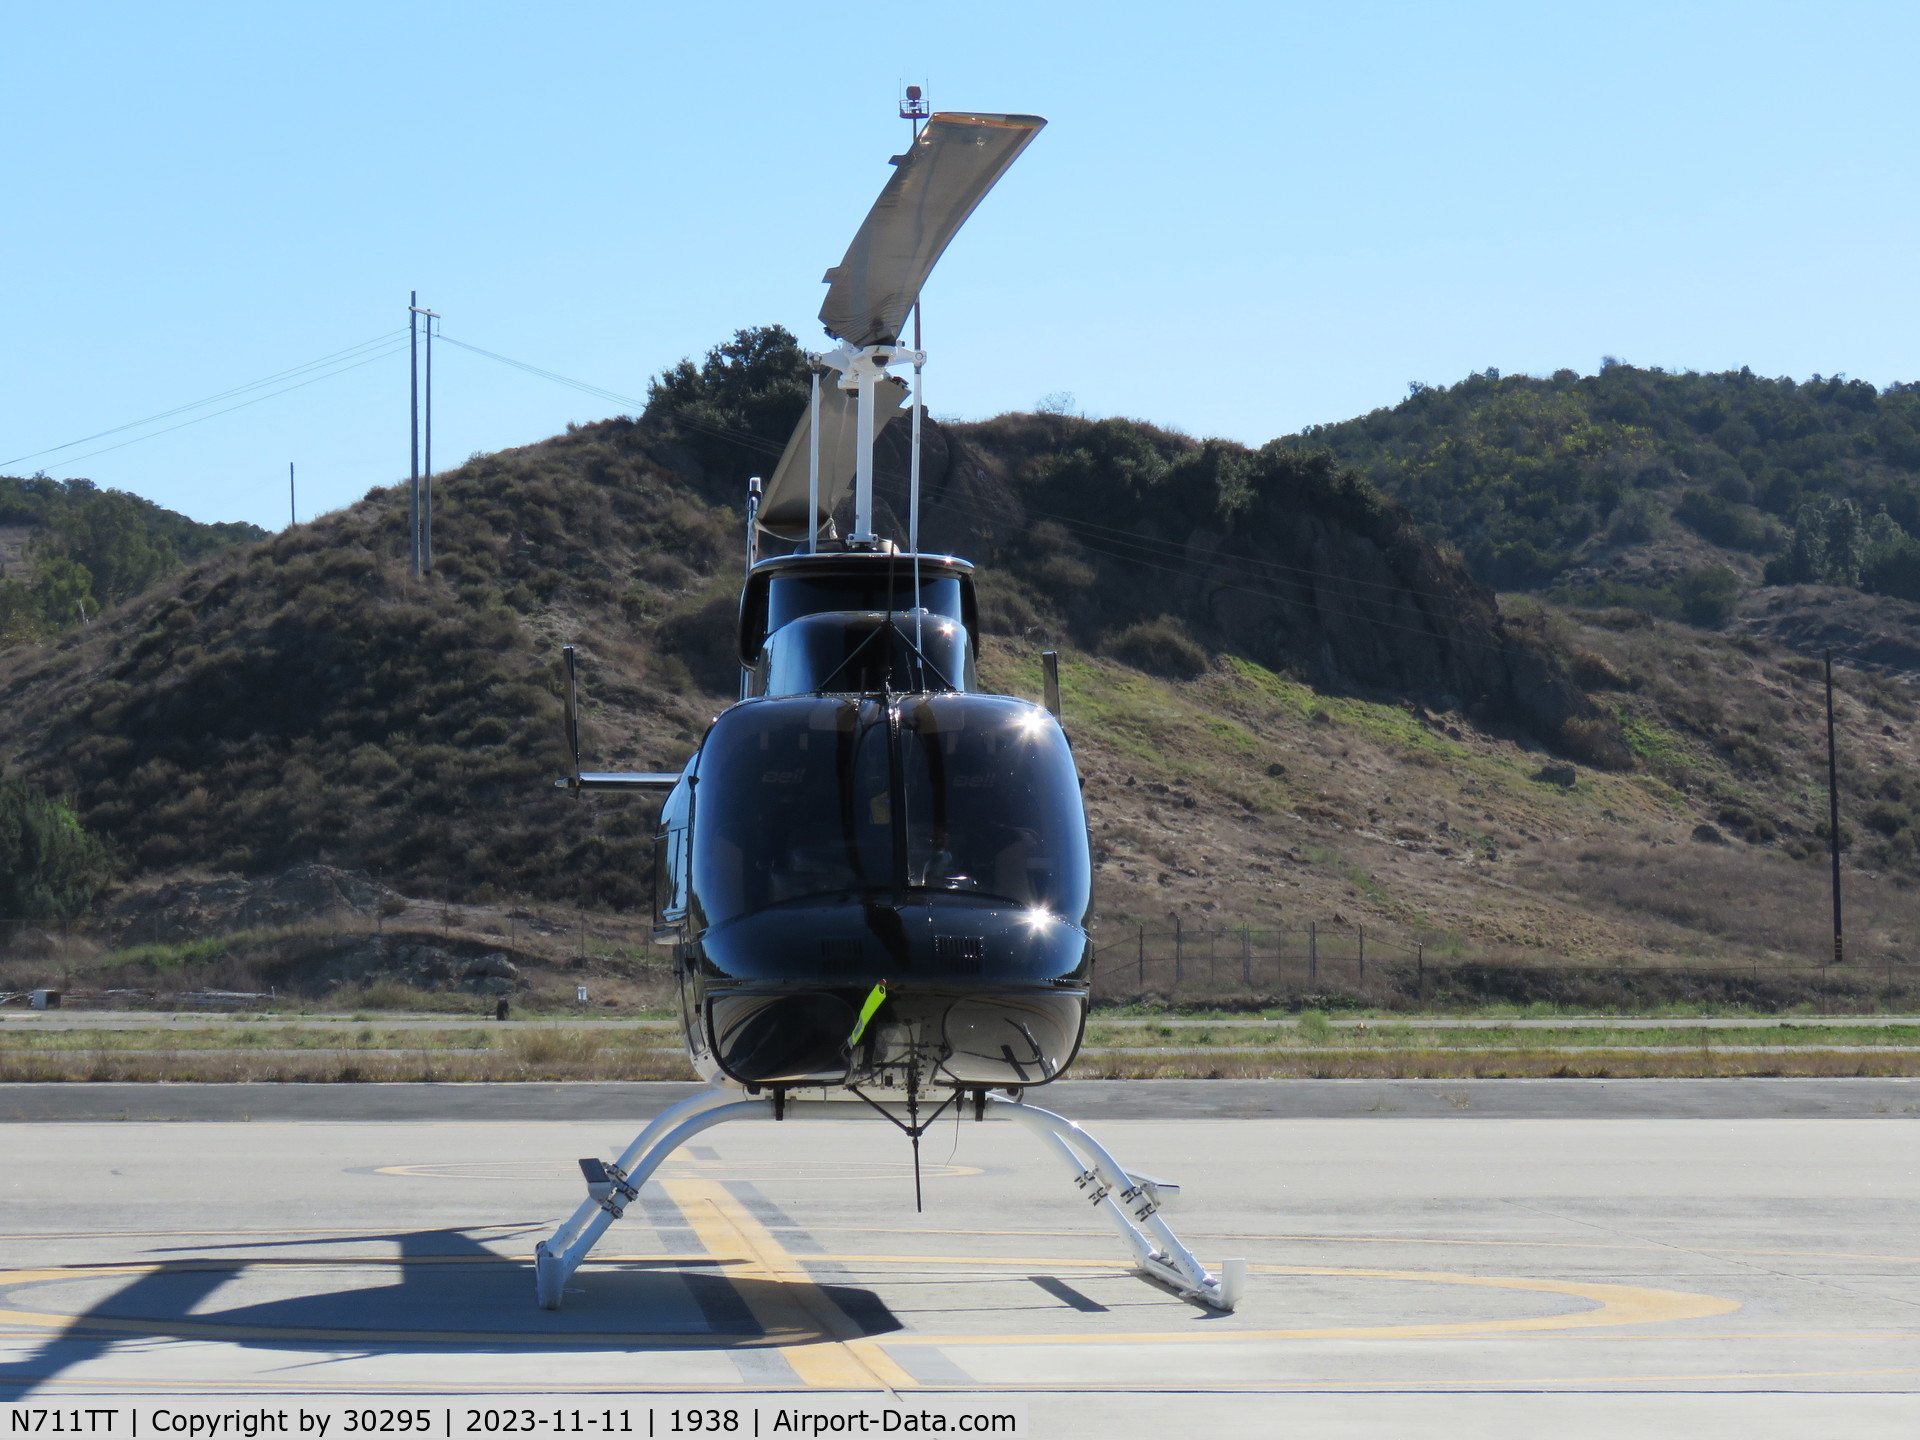 N711TT, 1991 Bell 206L-3 LongRanger III C/N 51433, Parked